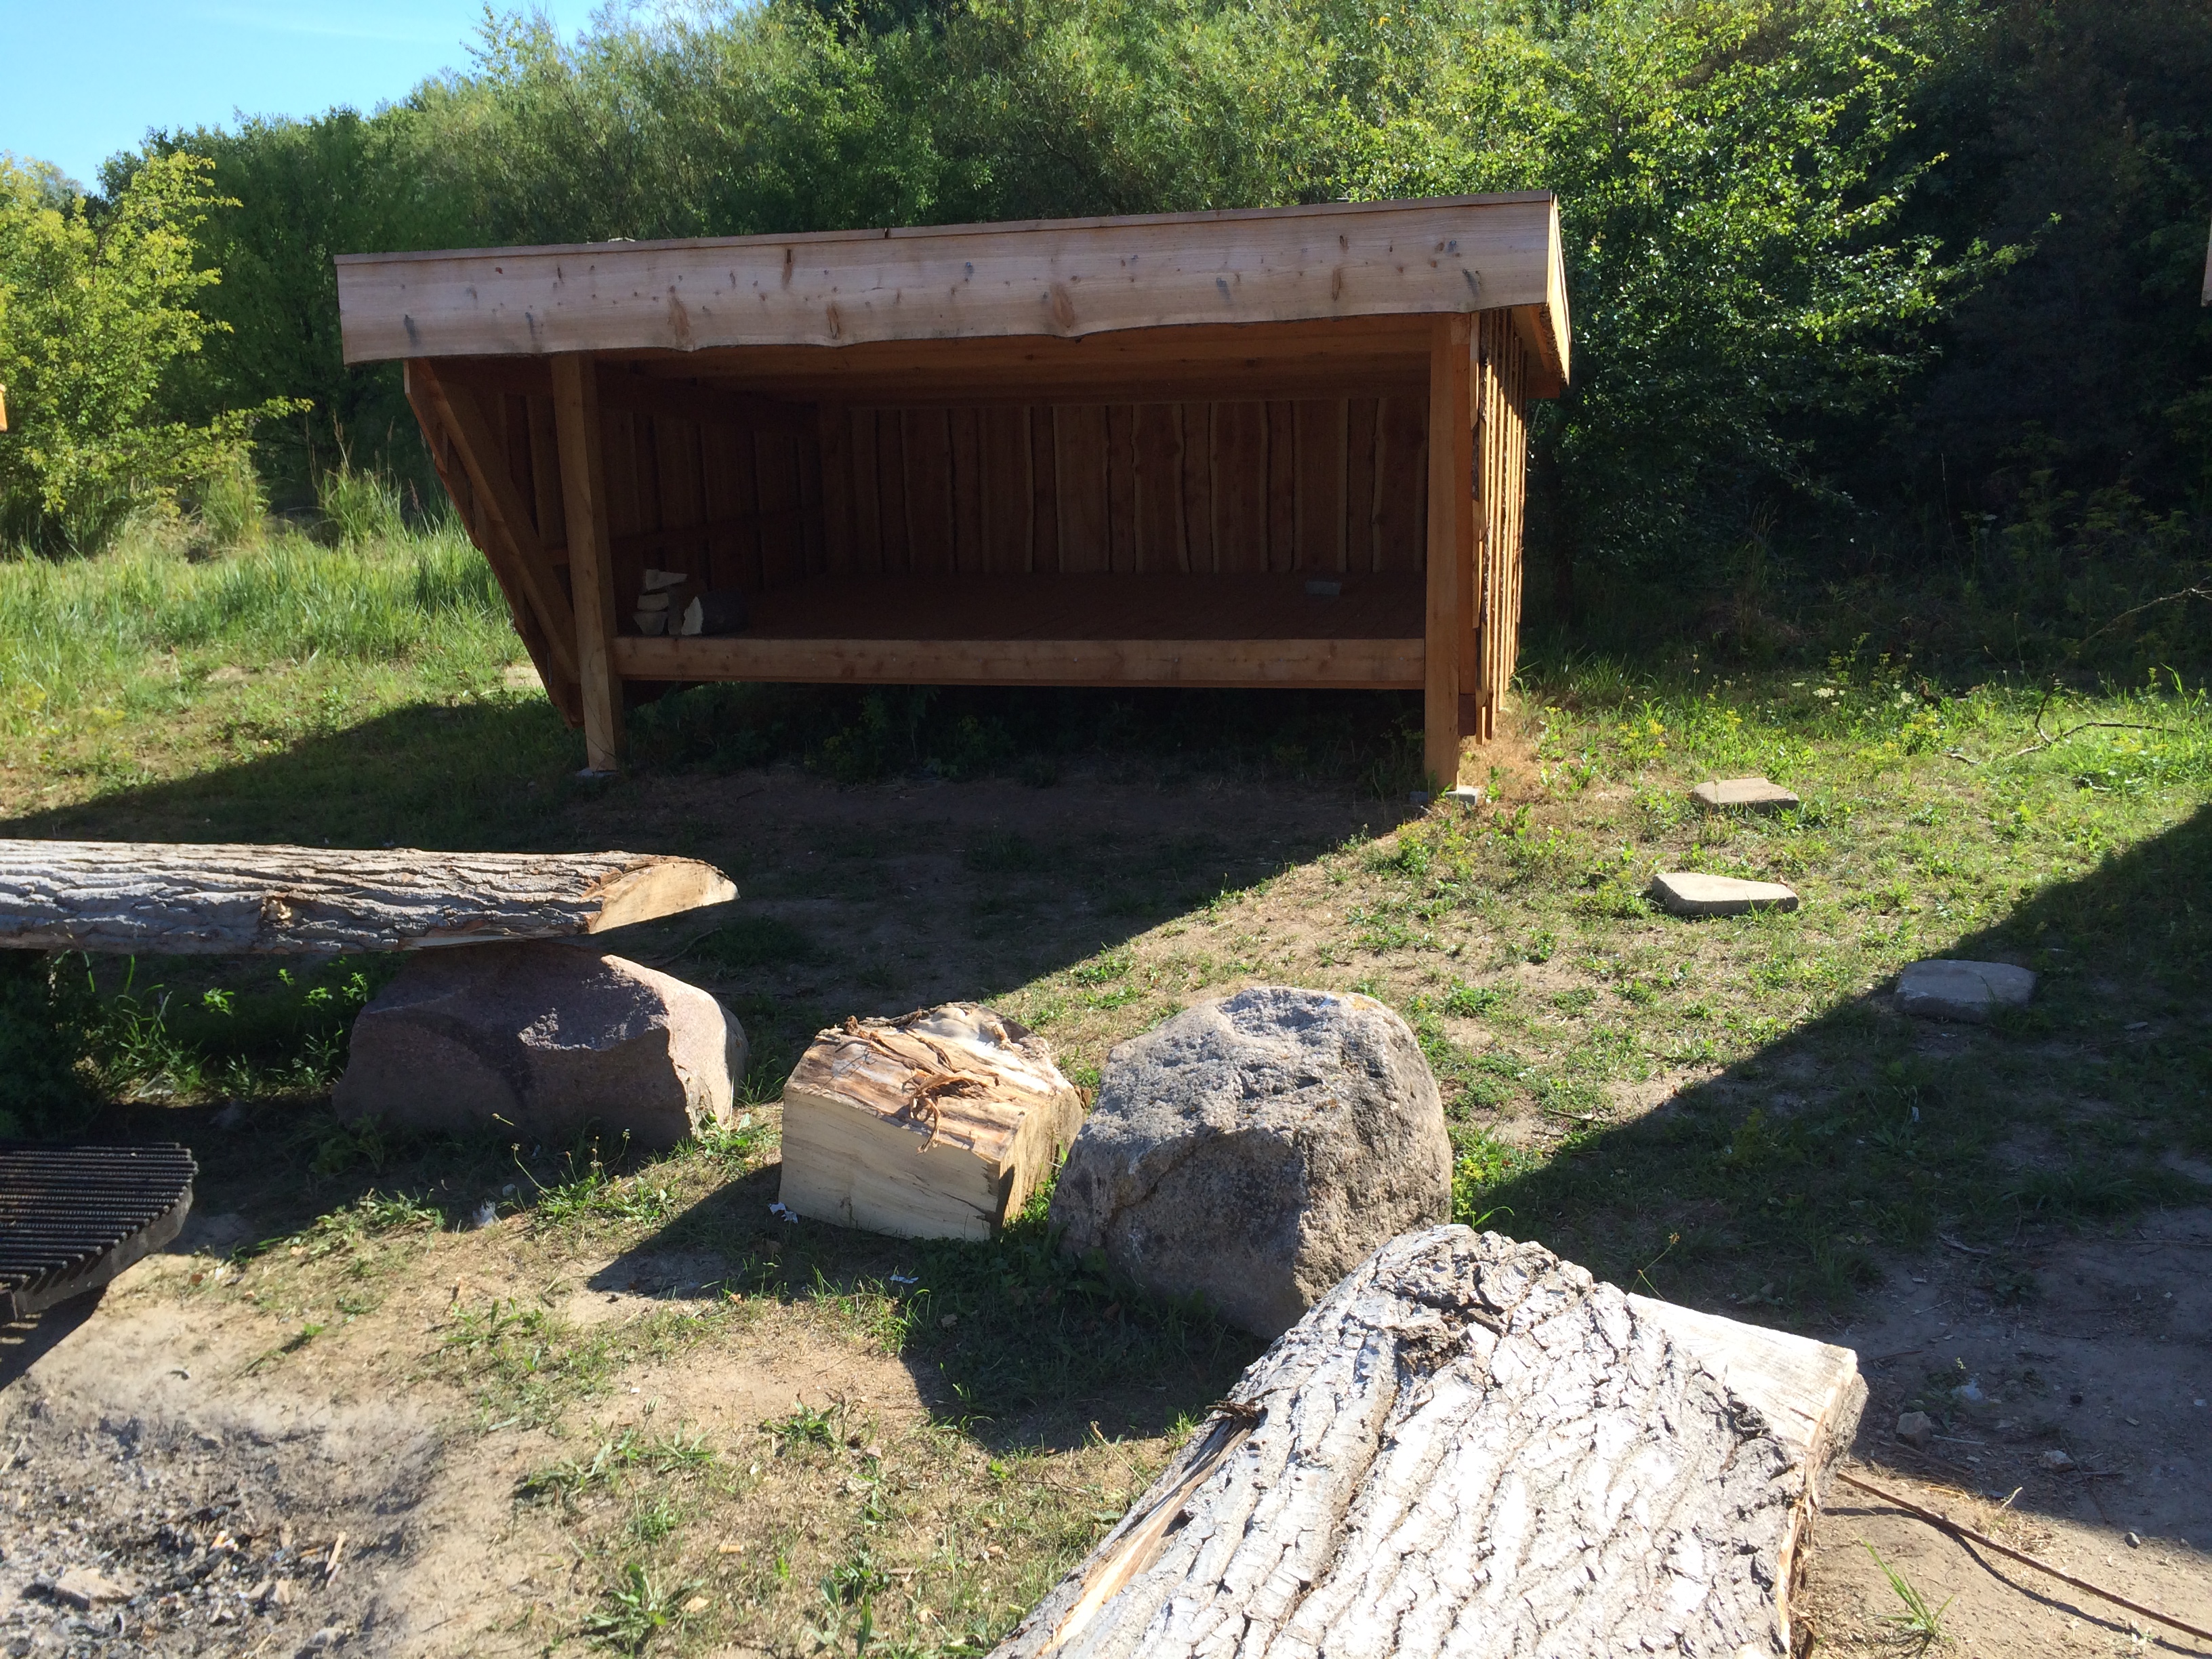 Foto viser et shelter lavet af træ, set forfra